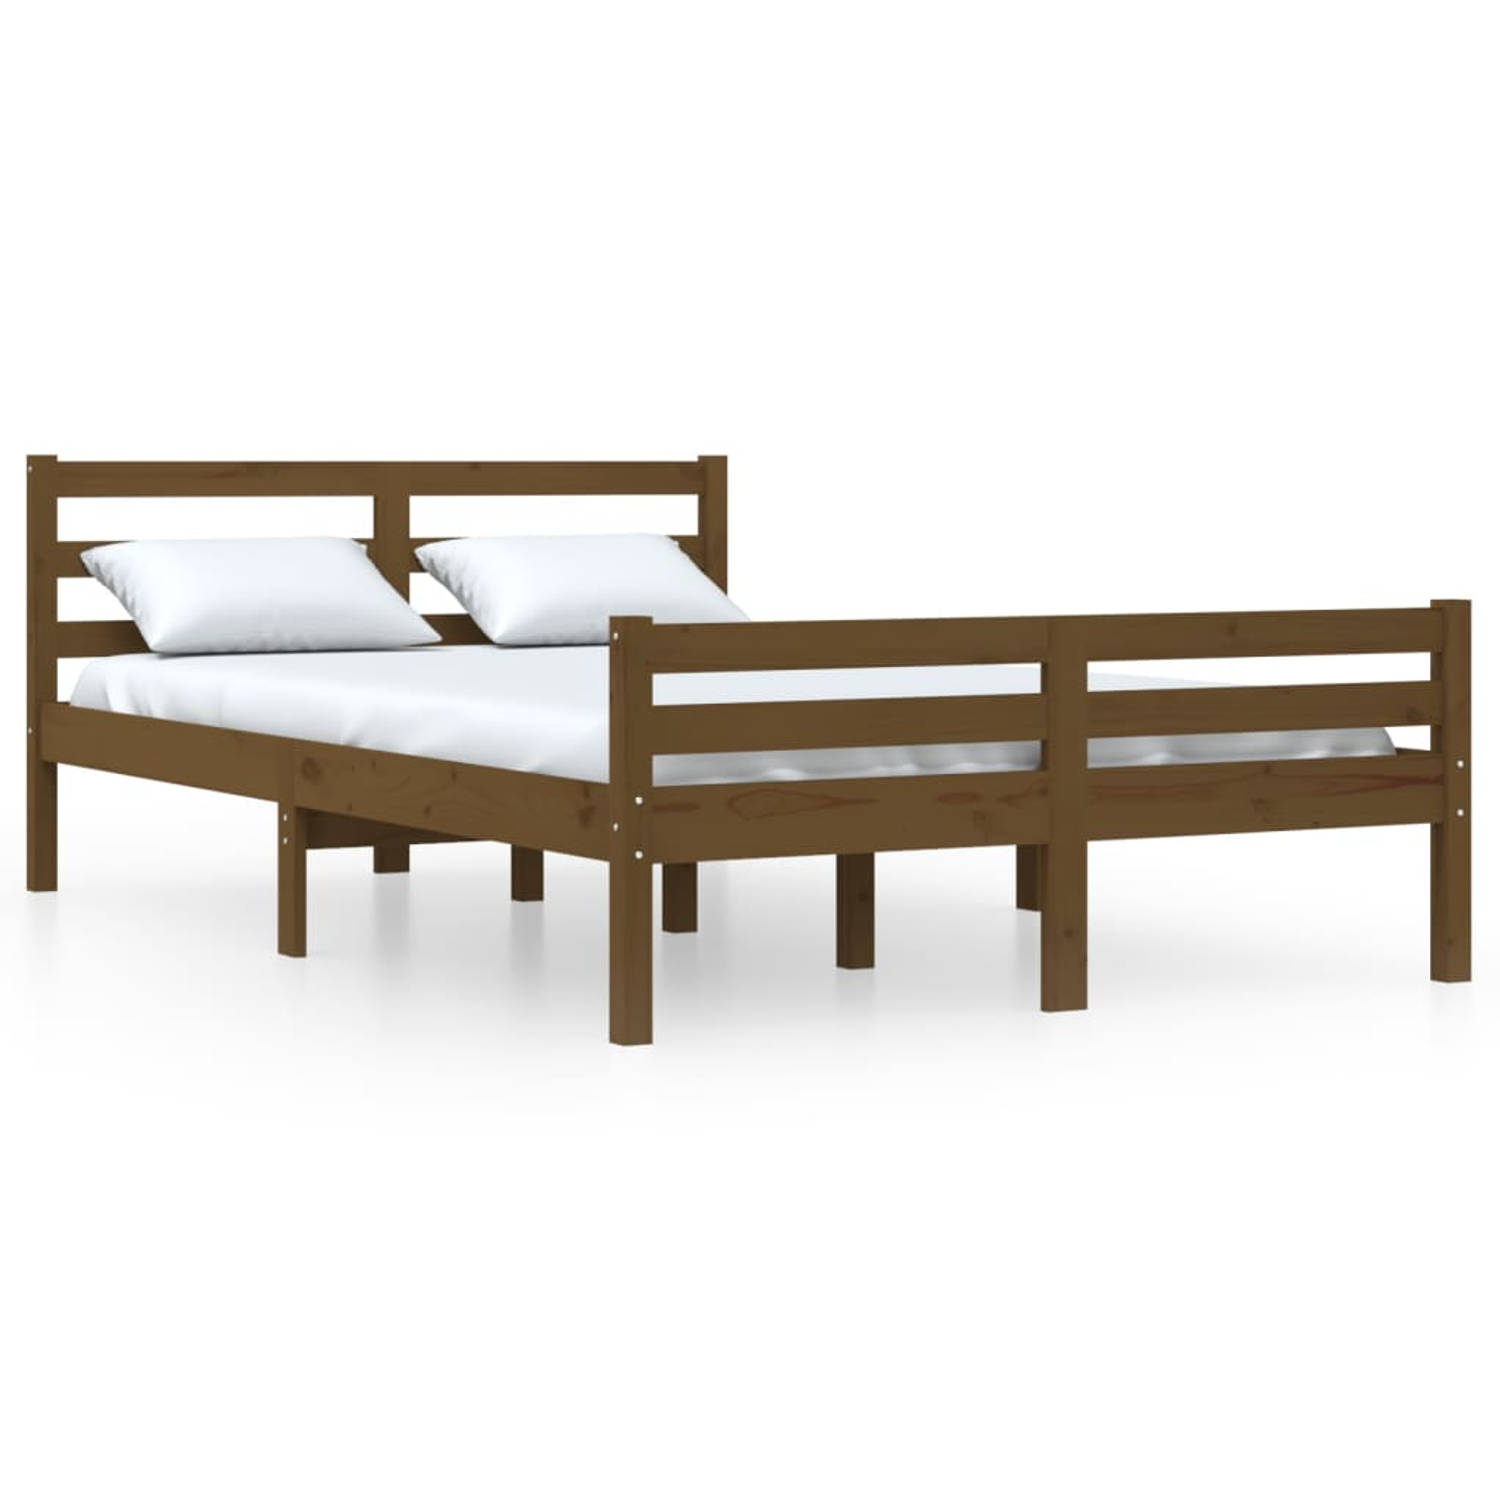 The Living Store Bedframe massief hout honingbruin 160x200 cm - Bedframe - Bedframes - Bed - Bedbodem - Ledikant - Bed Frame - Massief Houten Bedframe - Slaapmeubel - Tweepersoonsb